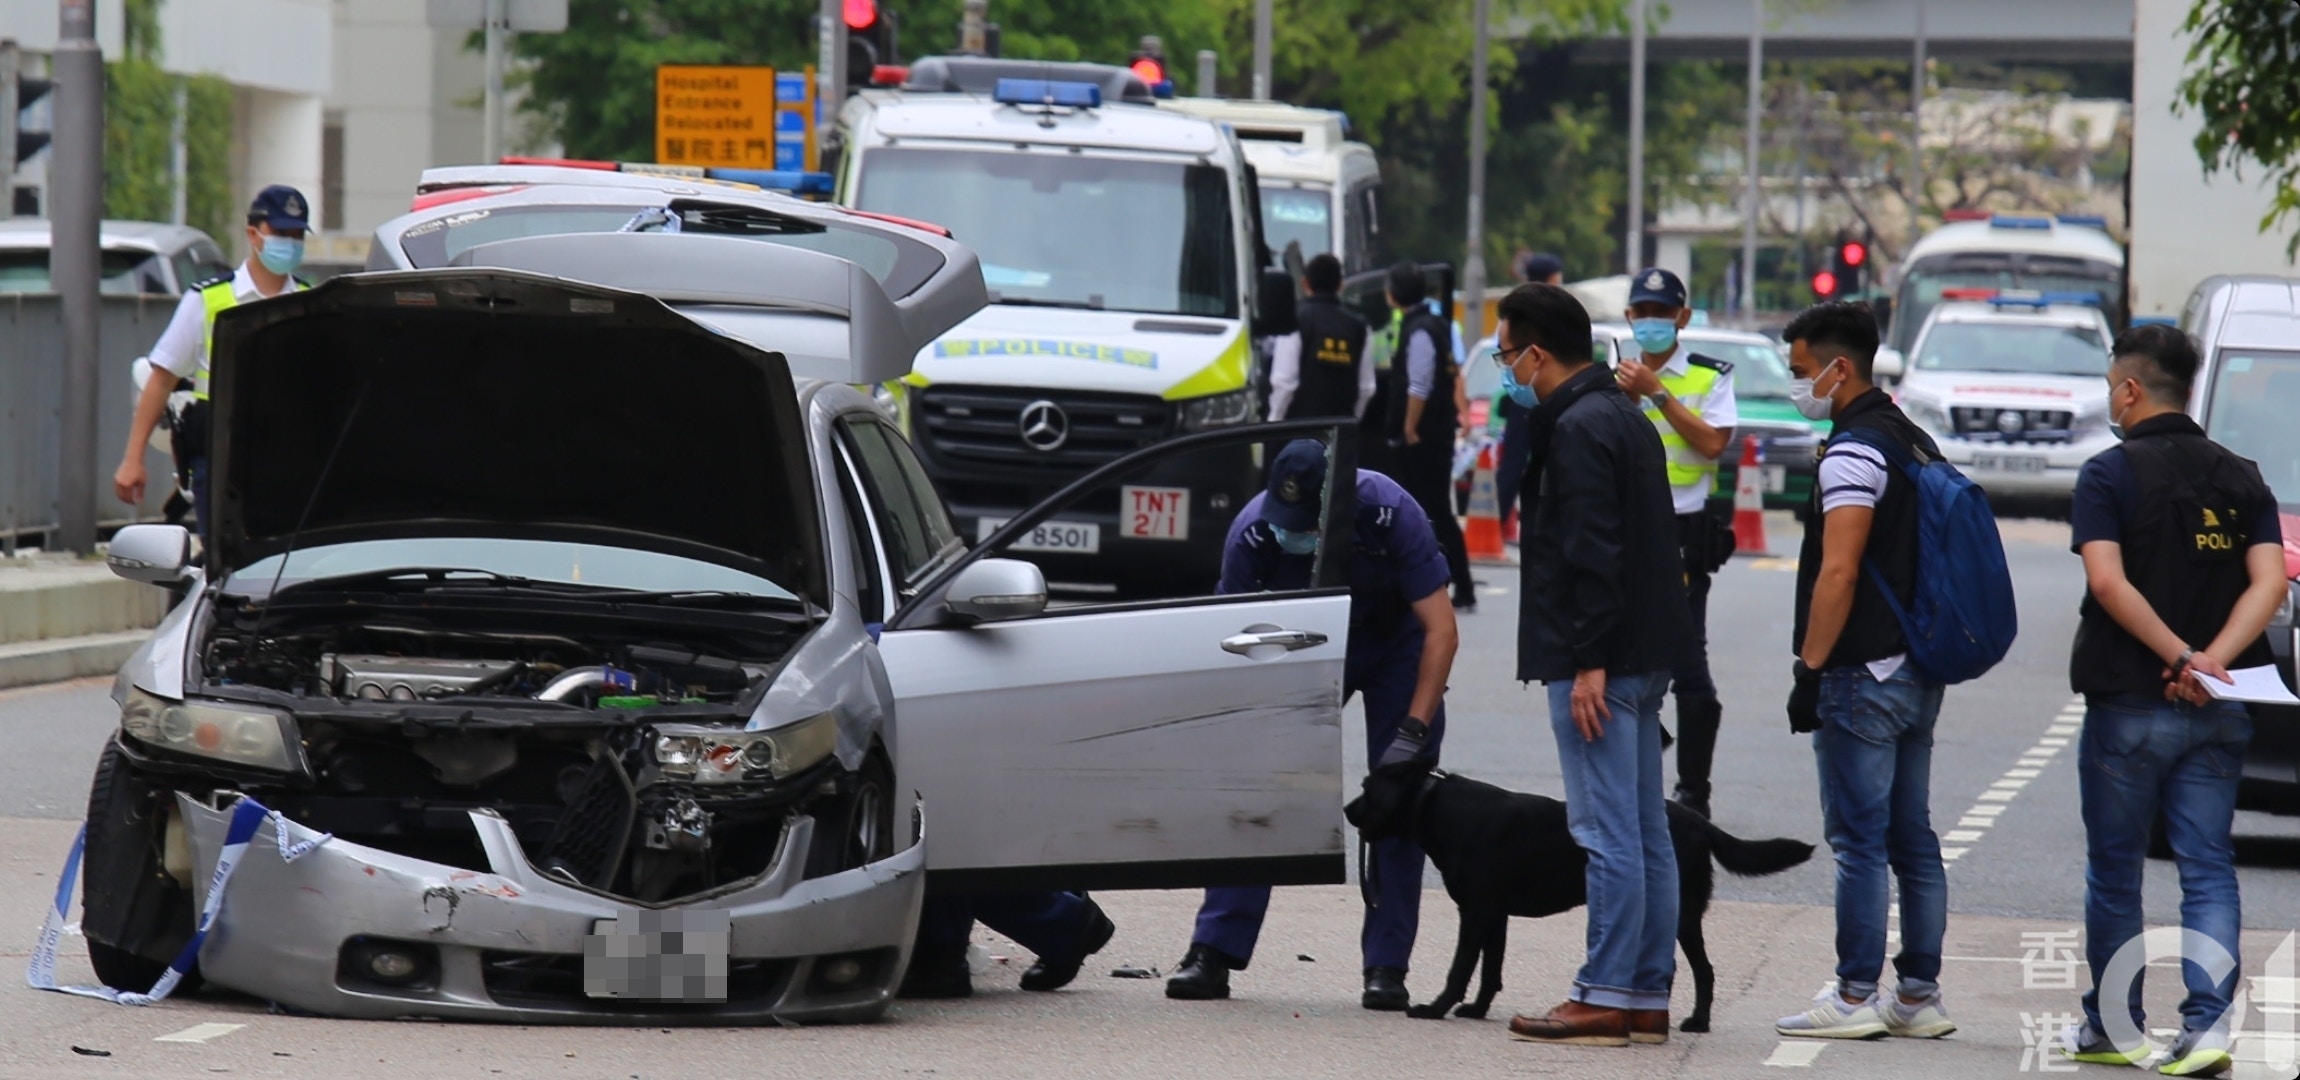 沙田一辆银色私家车逃避警方截查，在繁忙道路上演「碰碰车」图突围，最终被警员开枪击中右肩制服。（冯国良摄）